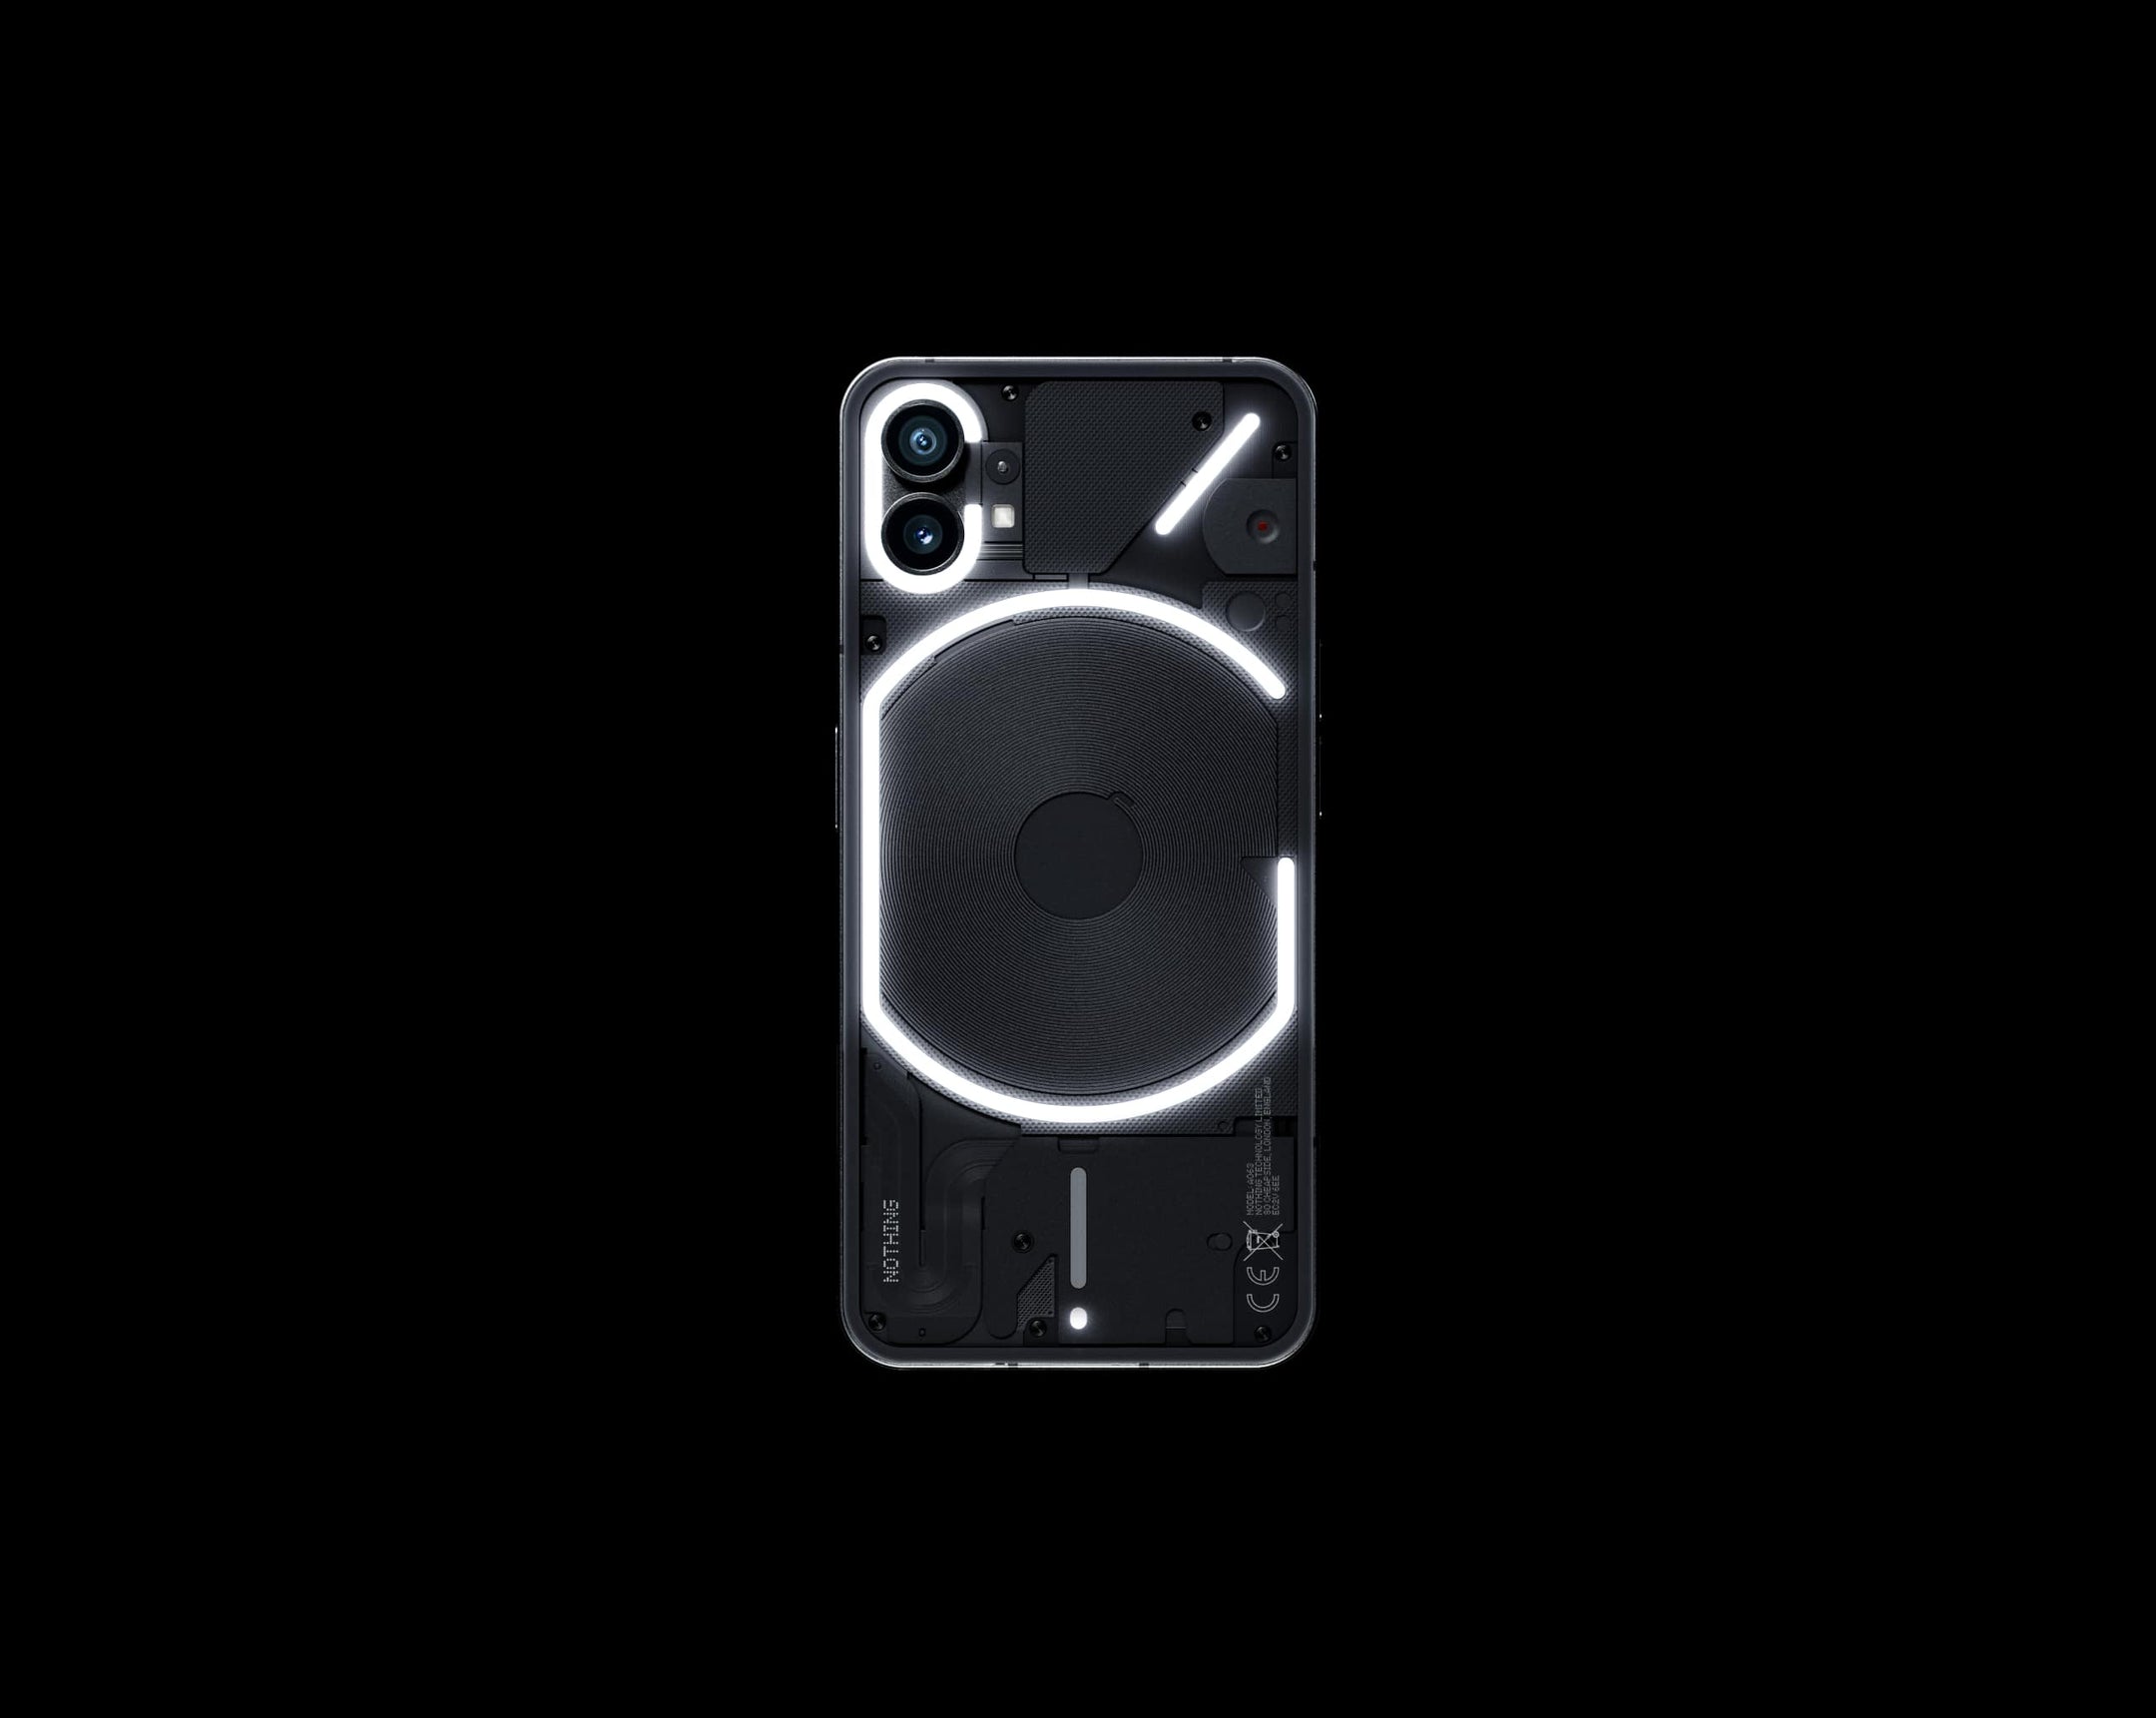 Le Nothing Phone (1) avec écran OLED 120Hz, puce Snapdragon 778G+ et rétroéclairage Glyph est en vente sur Amazon pour une réduction allant jusqu'à 80 euros